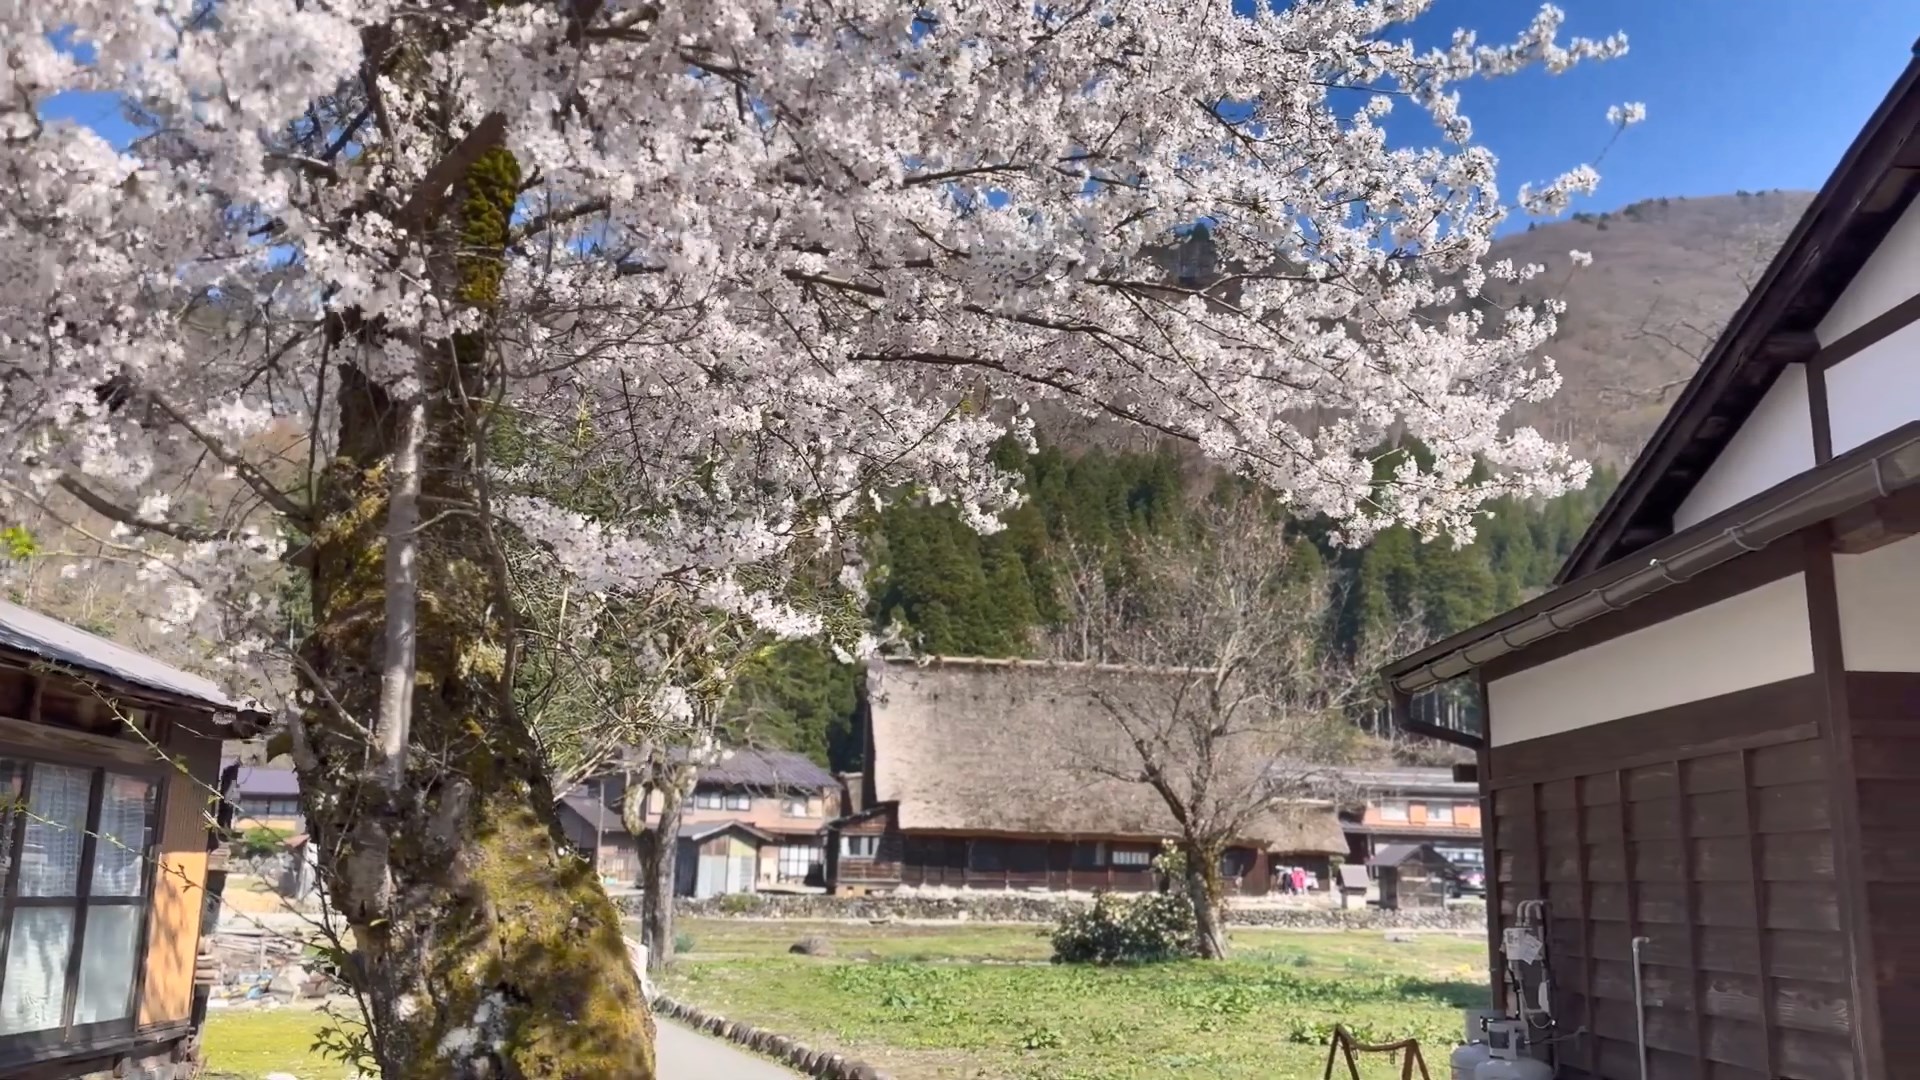 桜咲く白川郷の春　Spring in Shirakawago with cherry blossoms  d.jpg